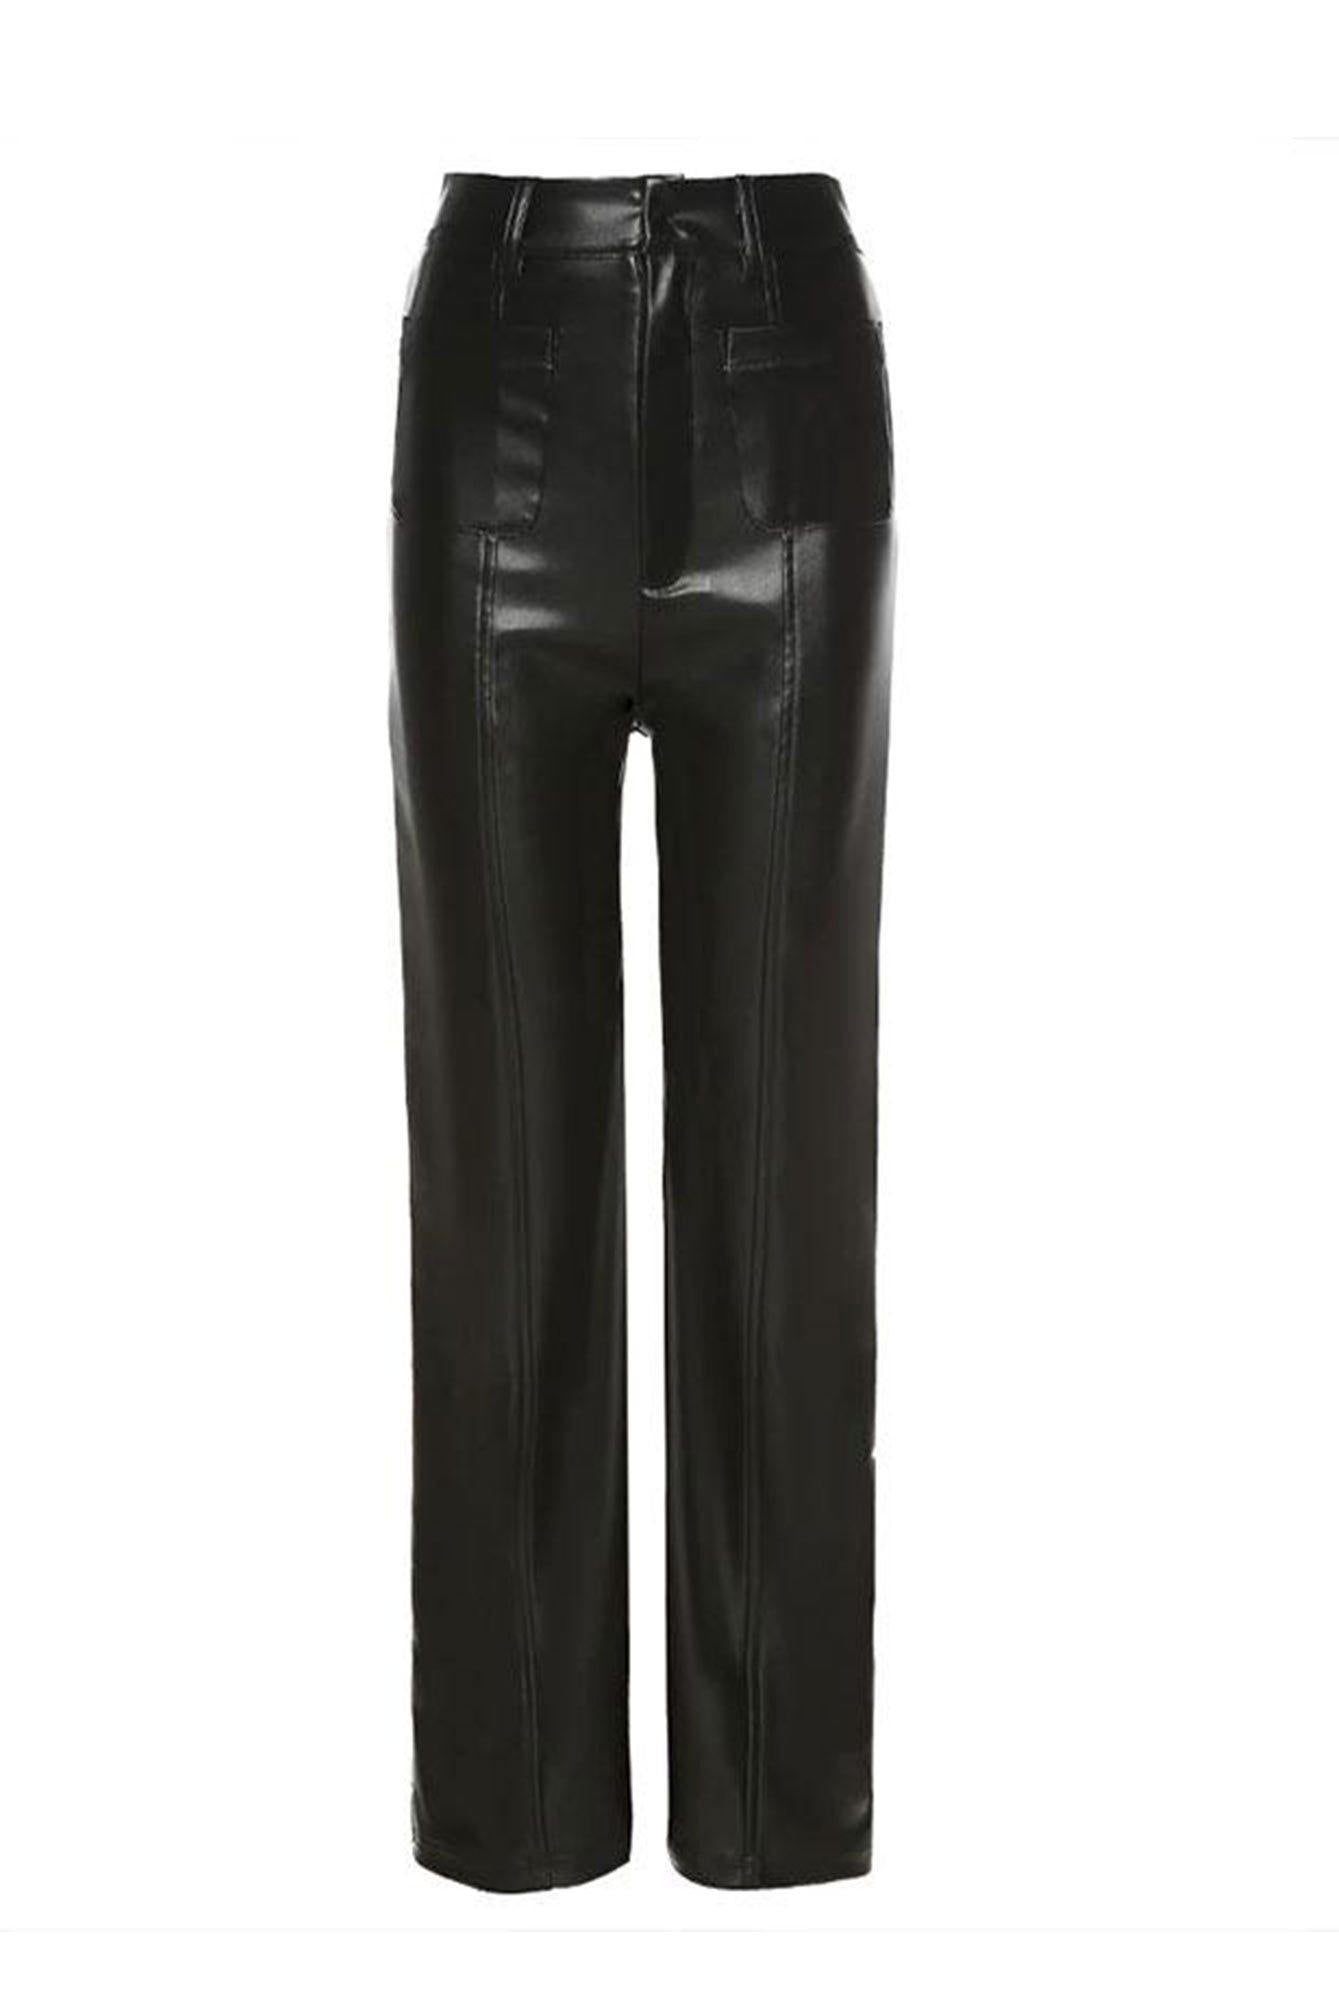 Black Leather Pants - shopuntitled.co